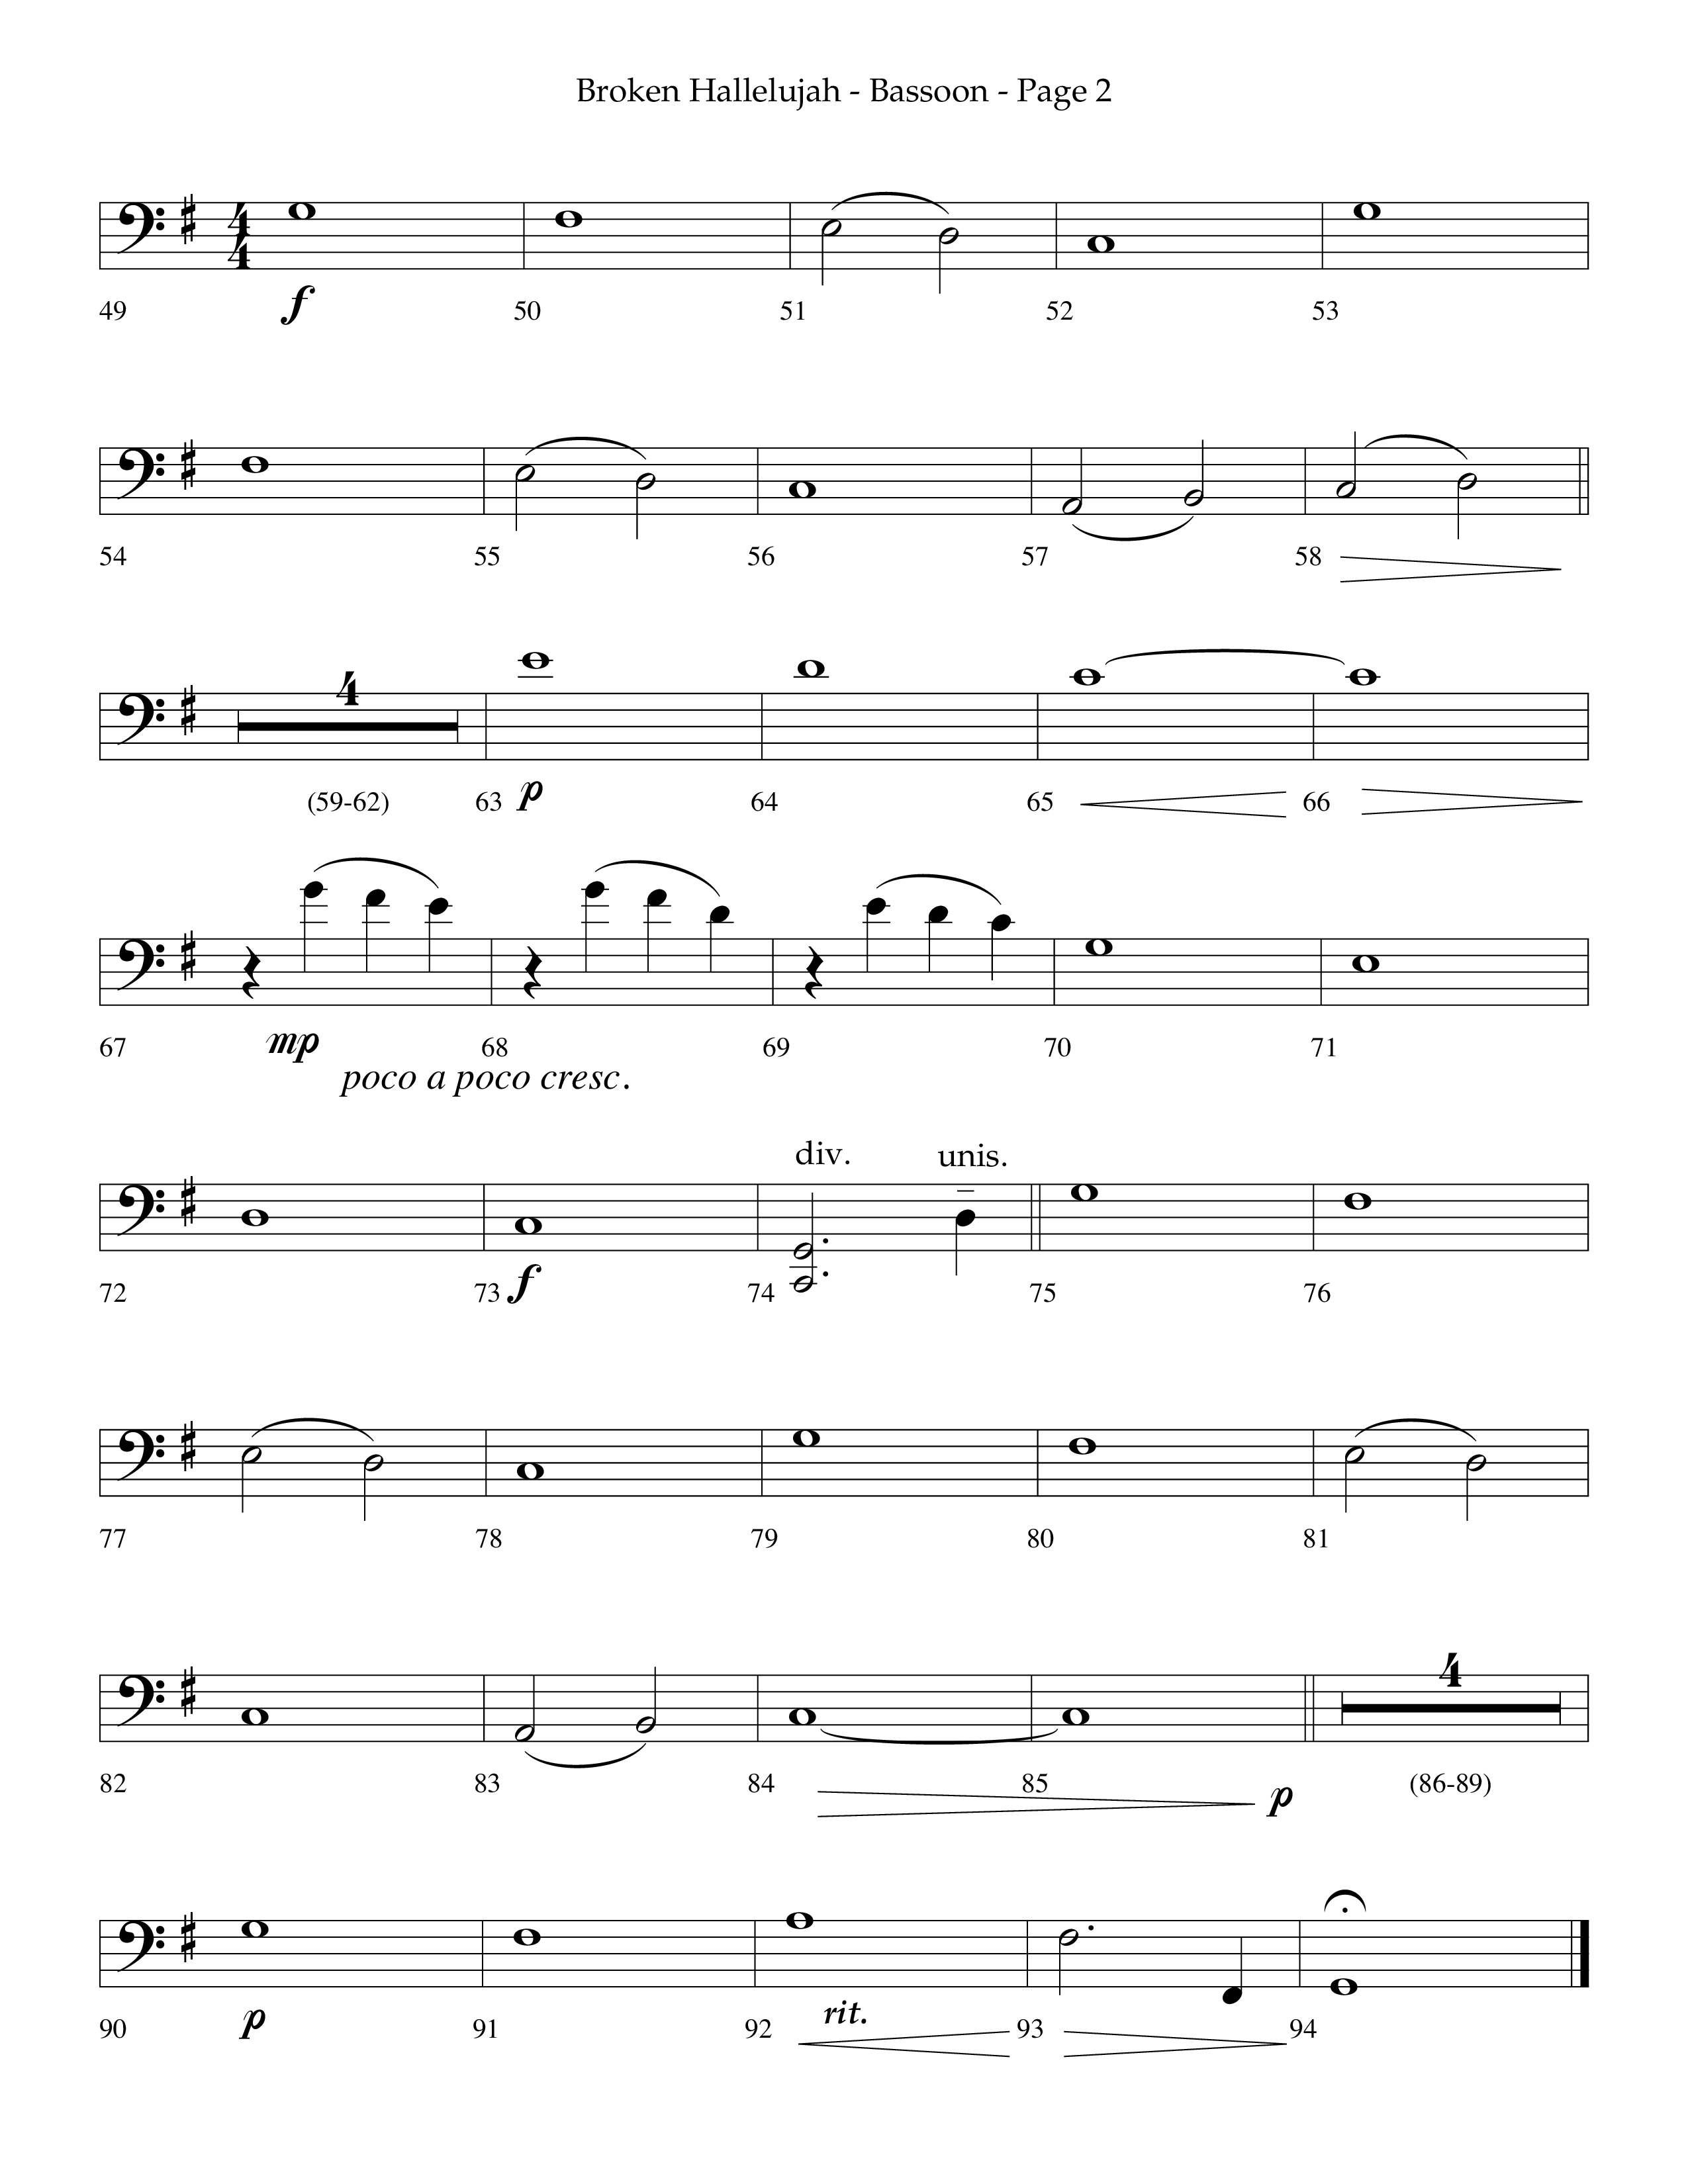 Broken Hallelujah (Choral Anthem SATB) Bassoon (Lifeway Choral / Arr. Phillip Keveren)